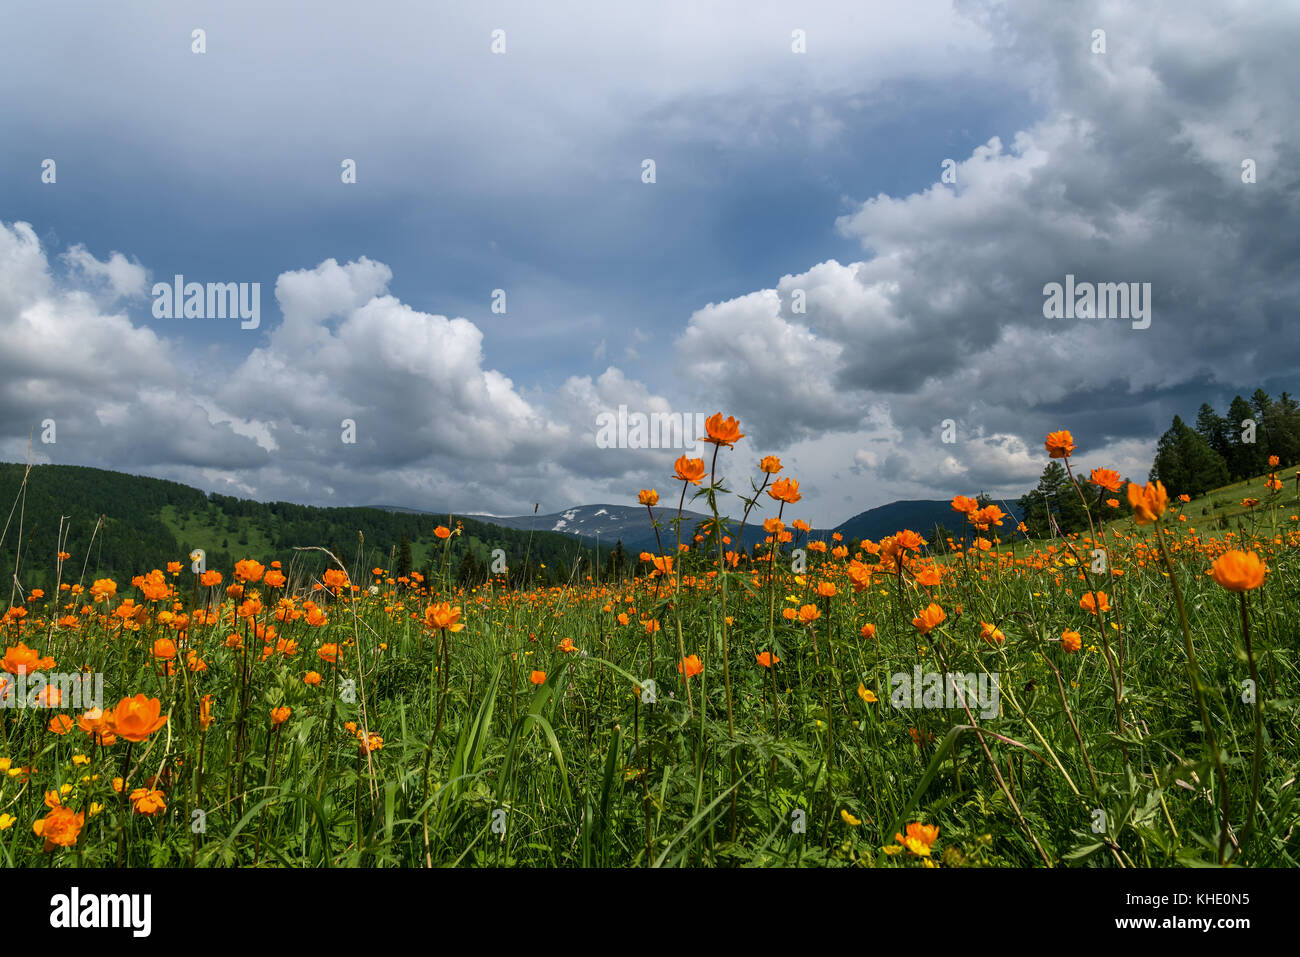 Magnifique paysage de montagne avec des fleurs orange dans la prairie sur un fond de montagnes, forêt et ciel bleu avec des nuages Banque D'Images